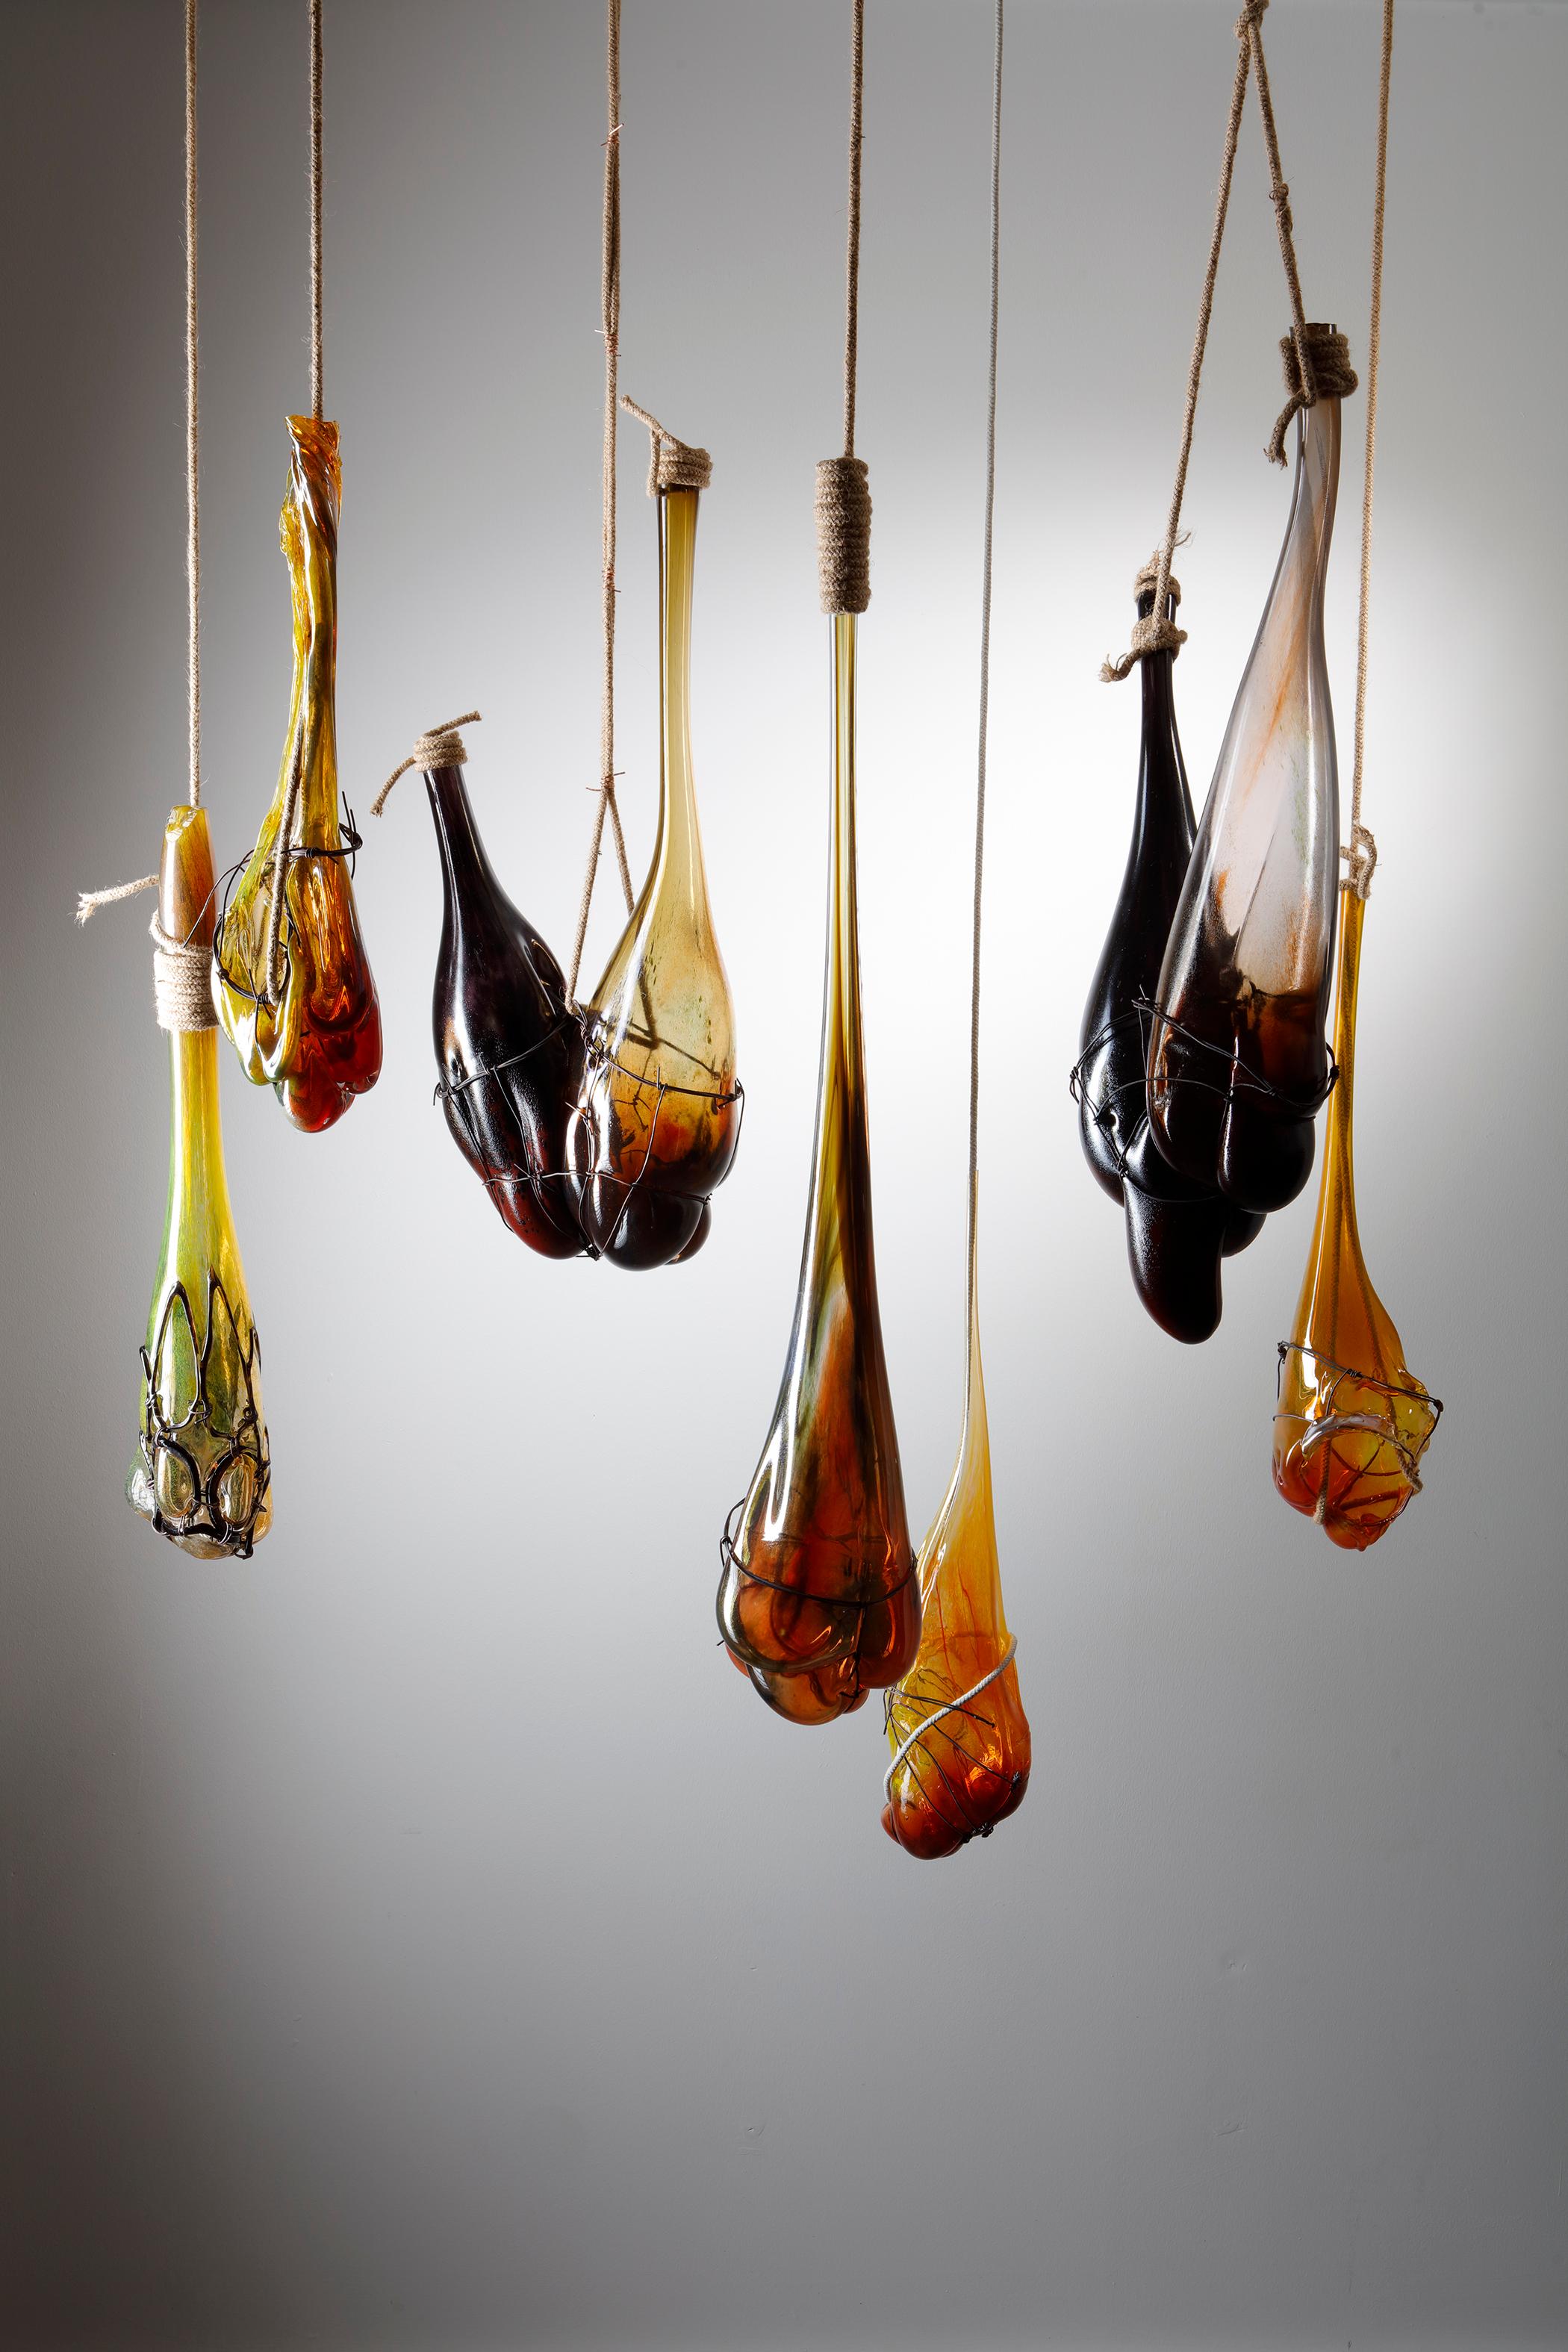 Eine seltsame Obstinstallation, eine einzigartige hängende Glasskulptur von Chris Day (Handgefertigt)